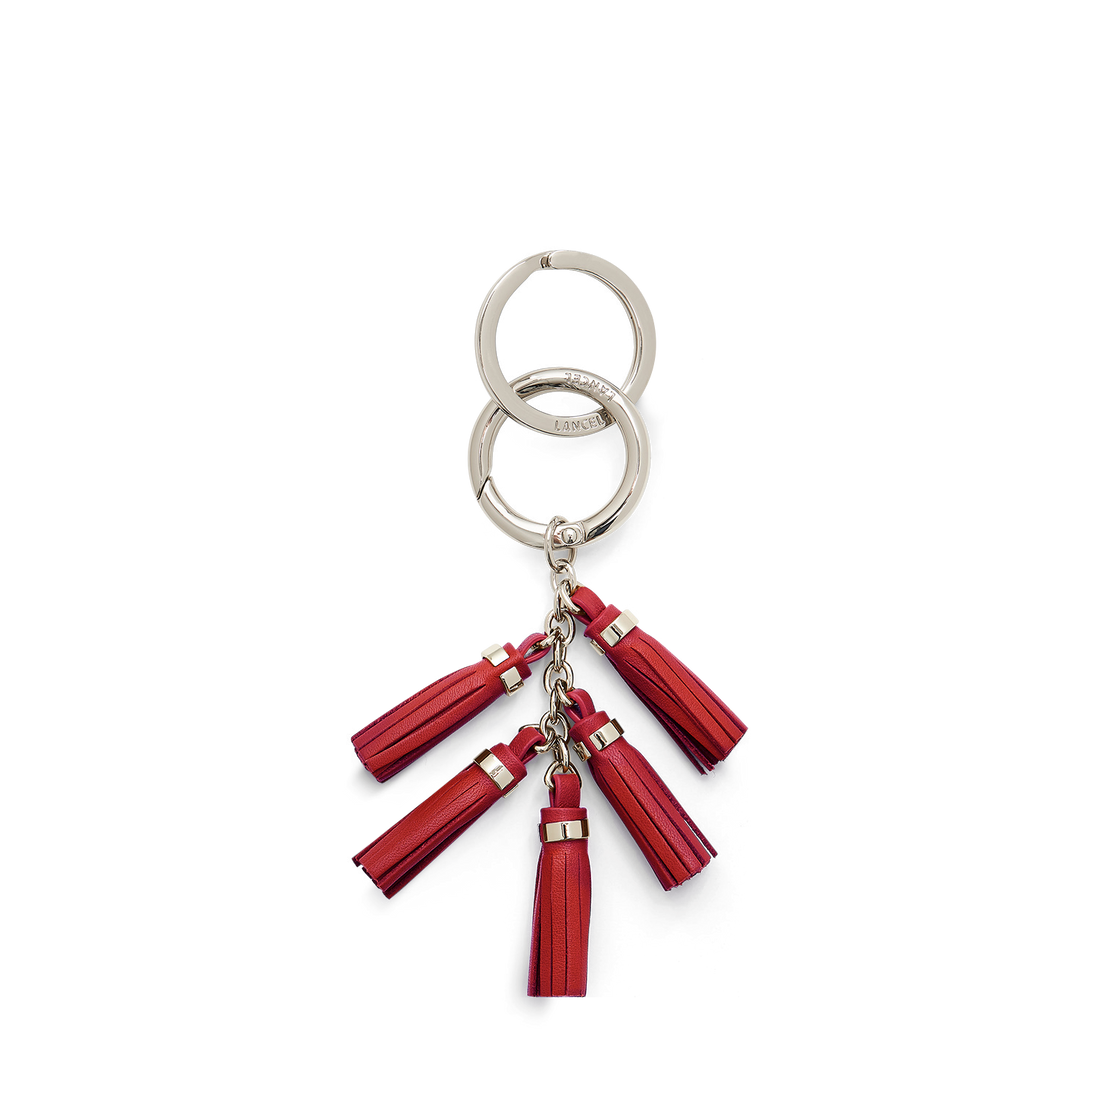 Porte clés - Gift - Pompon rouge